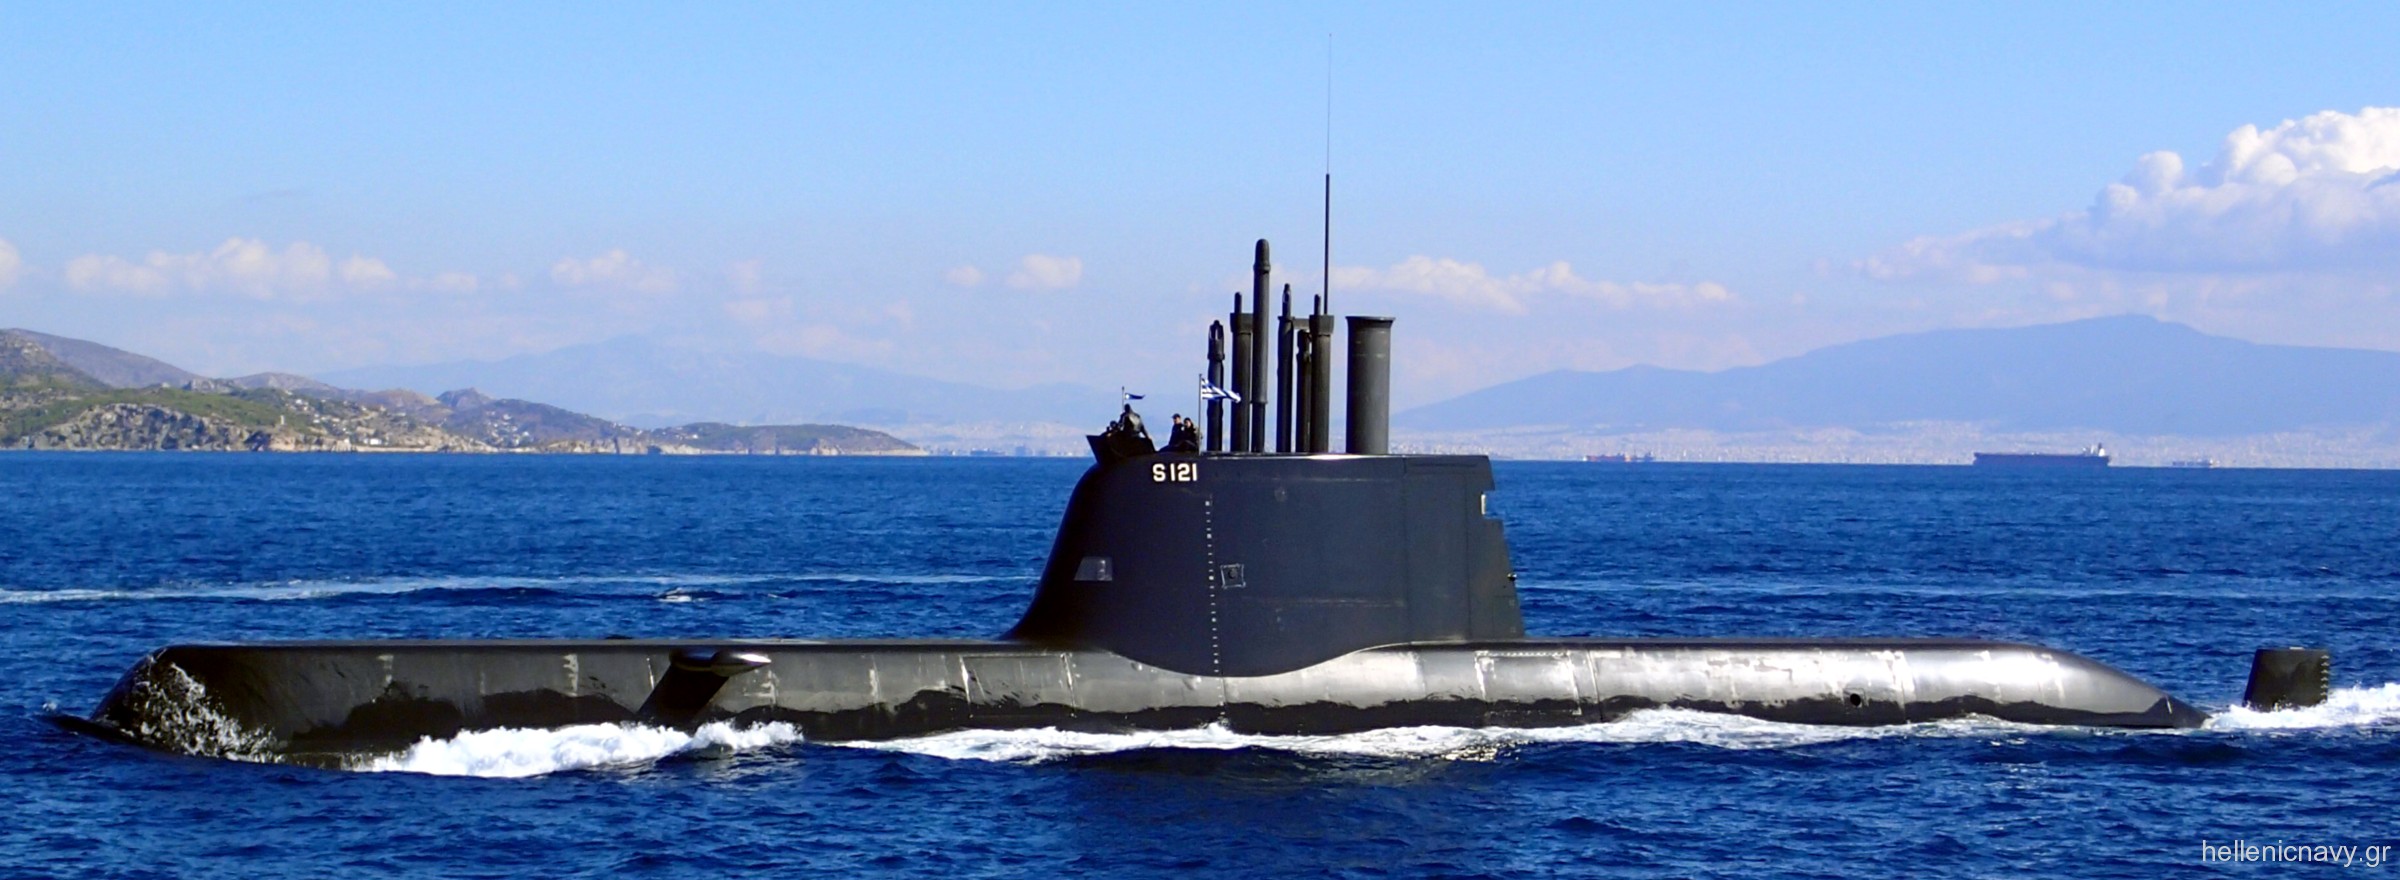 ΠΝ: Πιστοποίηση βλημάτων UGM-84 και αντιμέτρων τορπιλών στα υποβρύχια Type 214